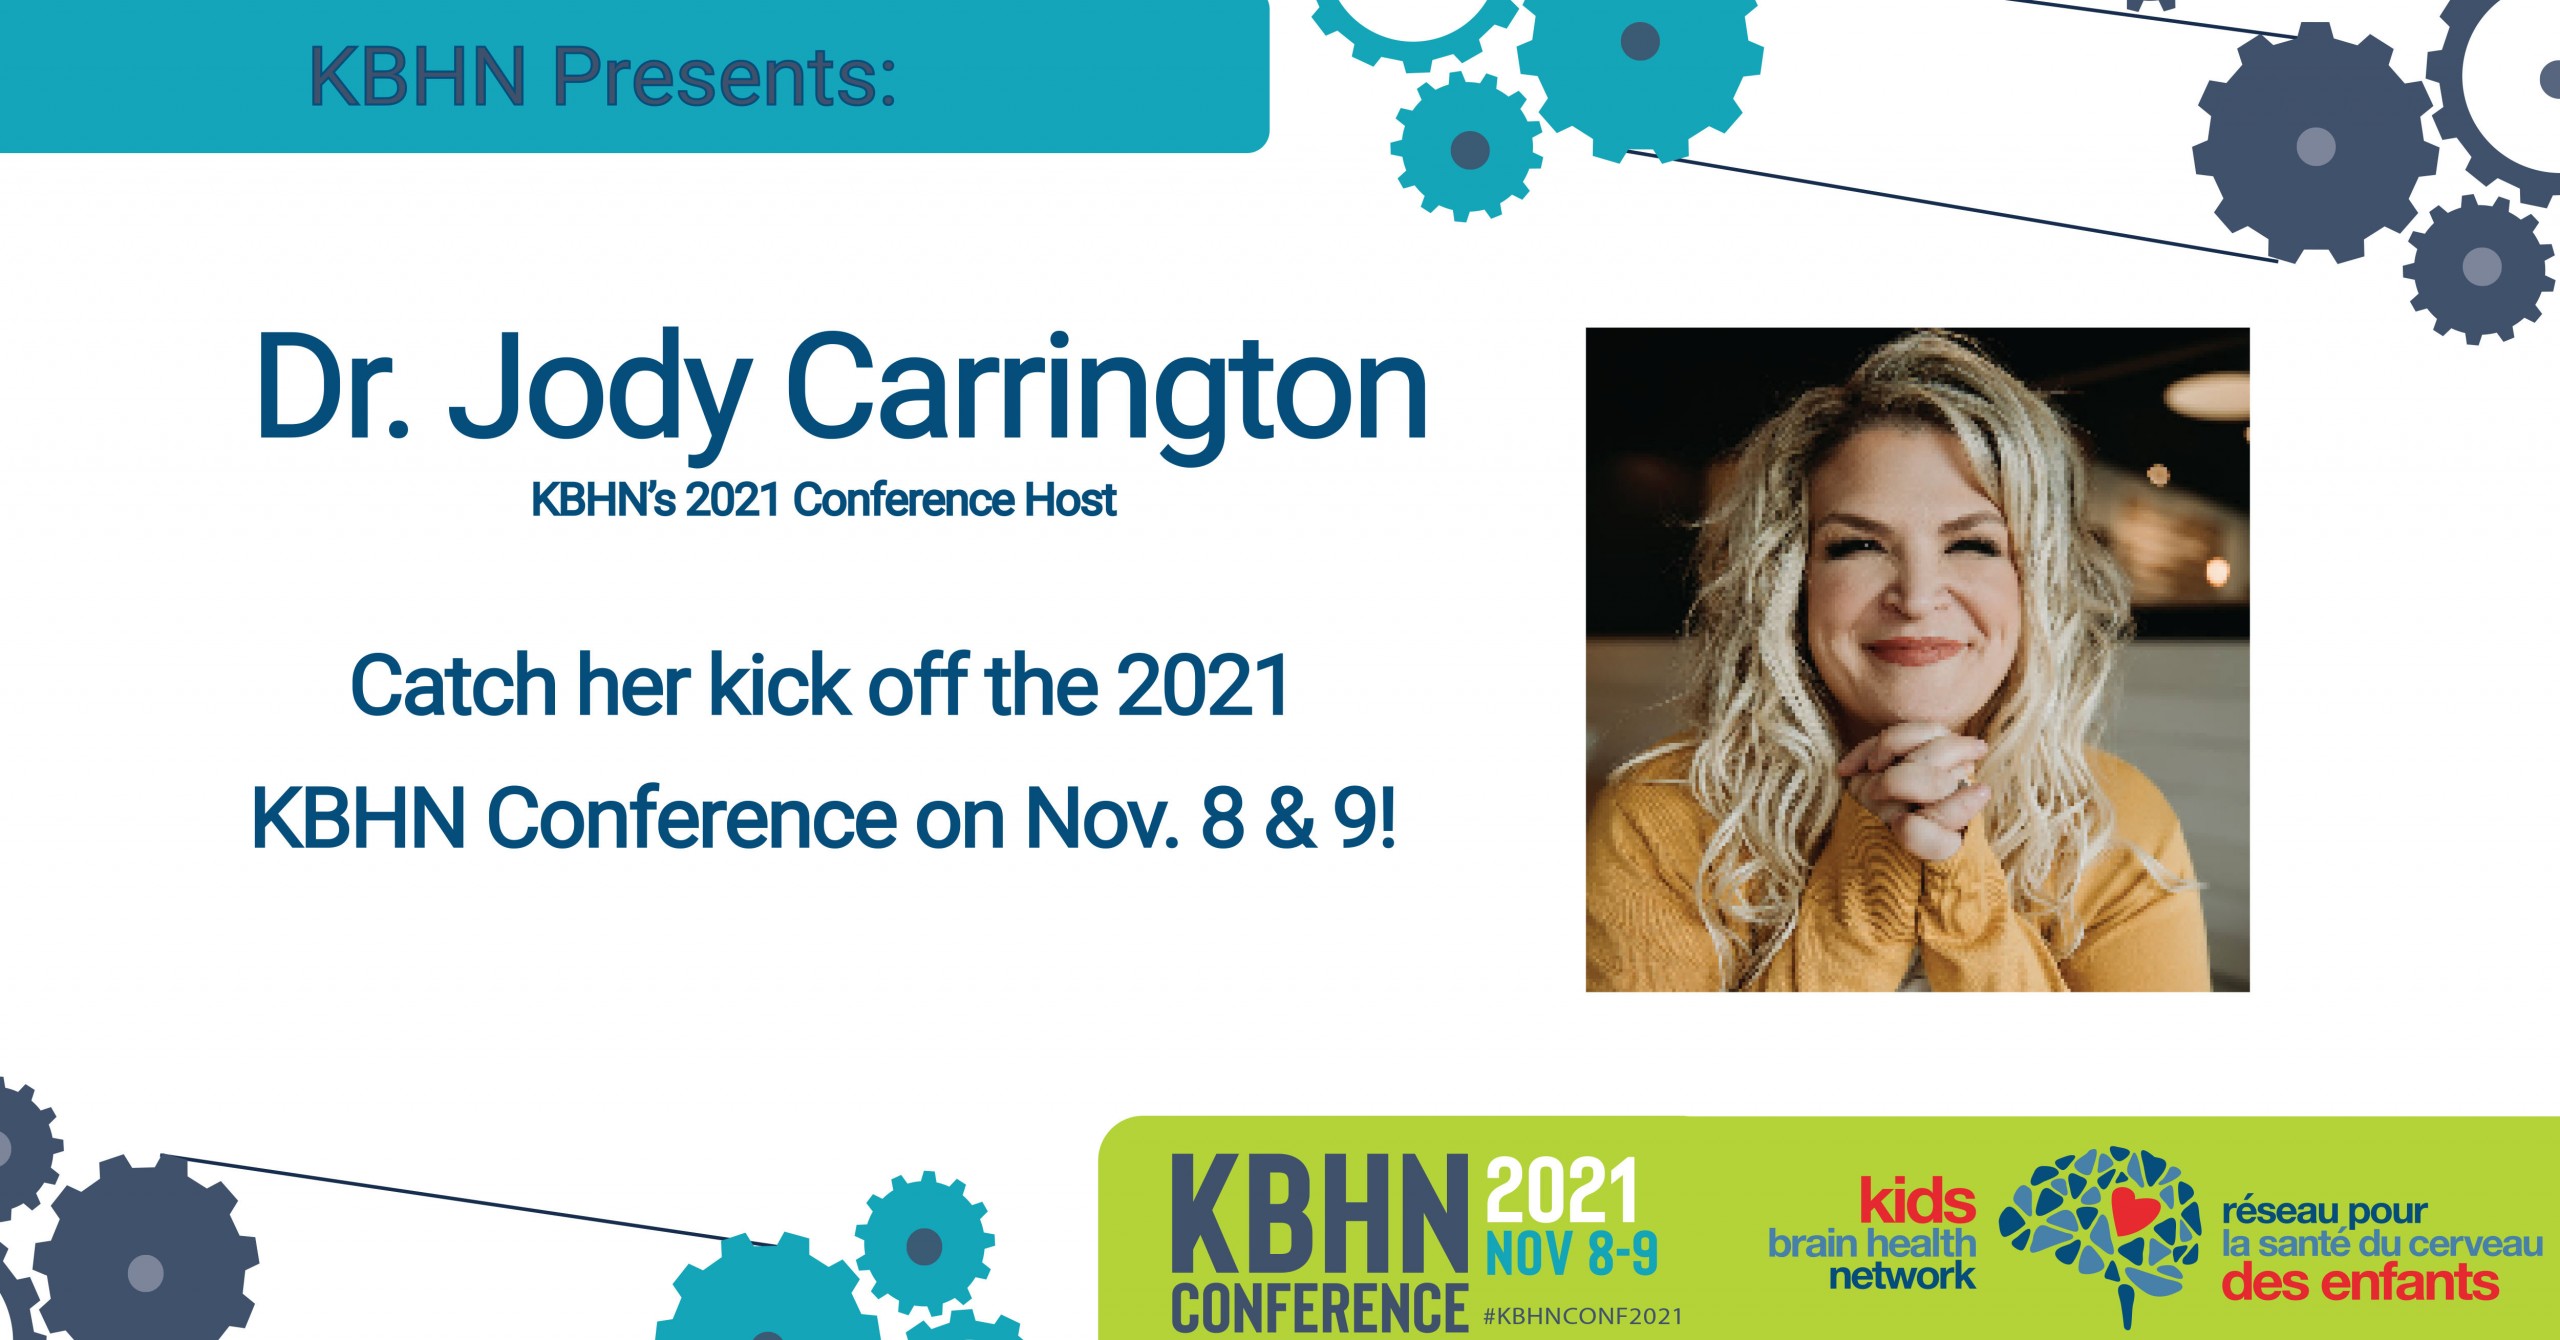 Dr. Jody Carrington, 2021 KBHN Conference Host